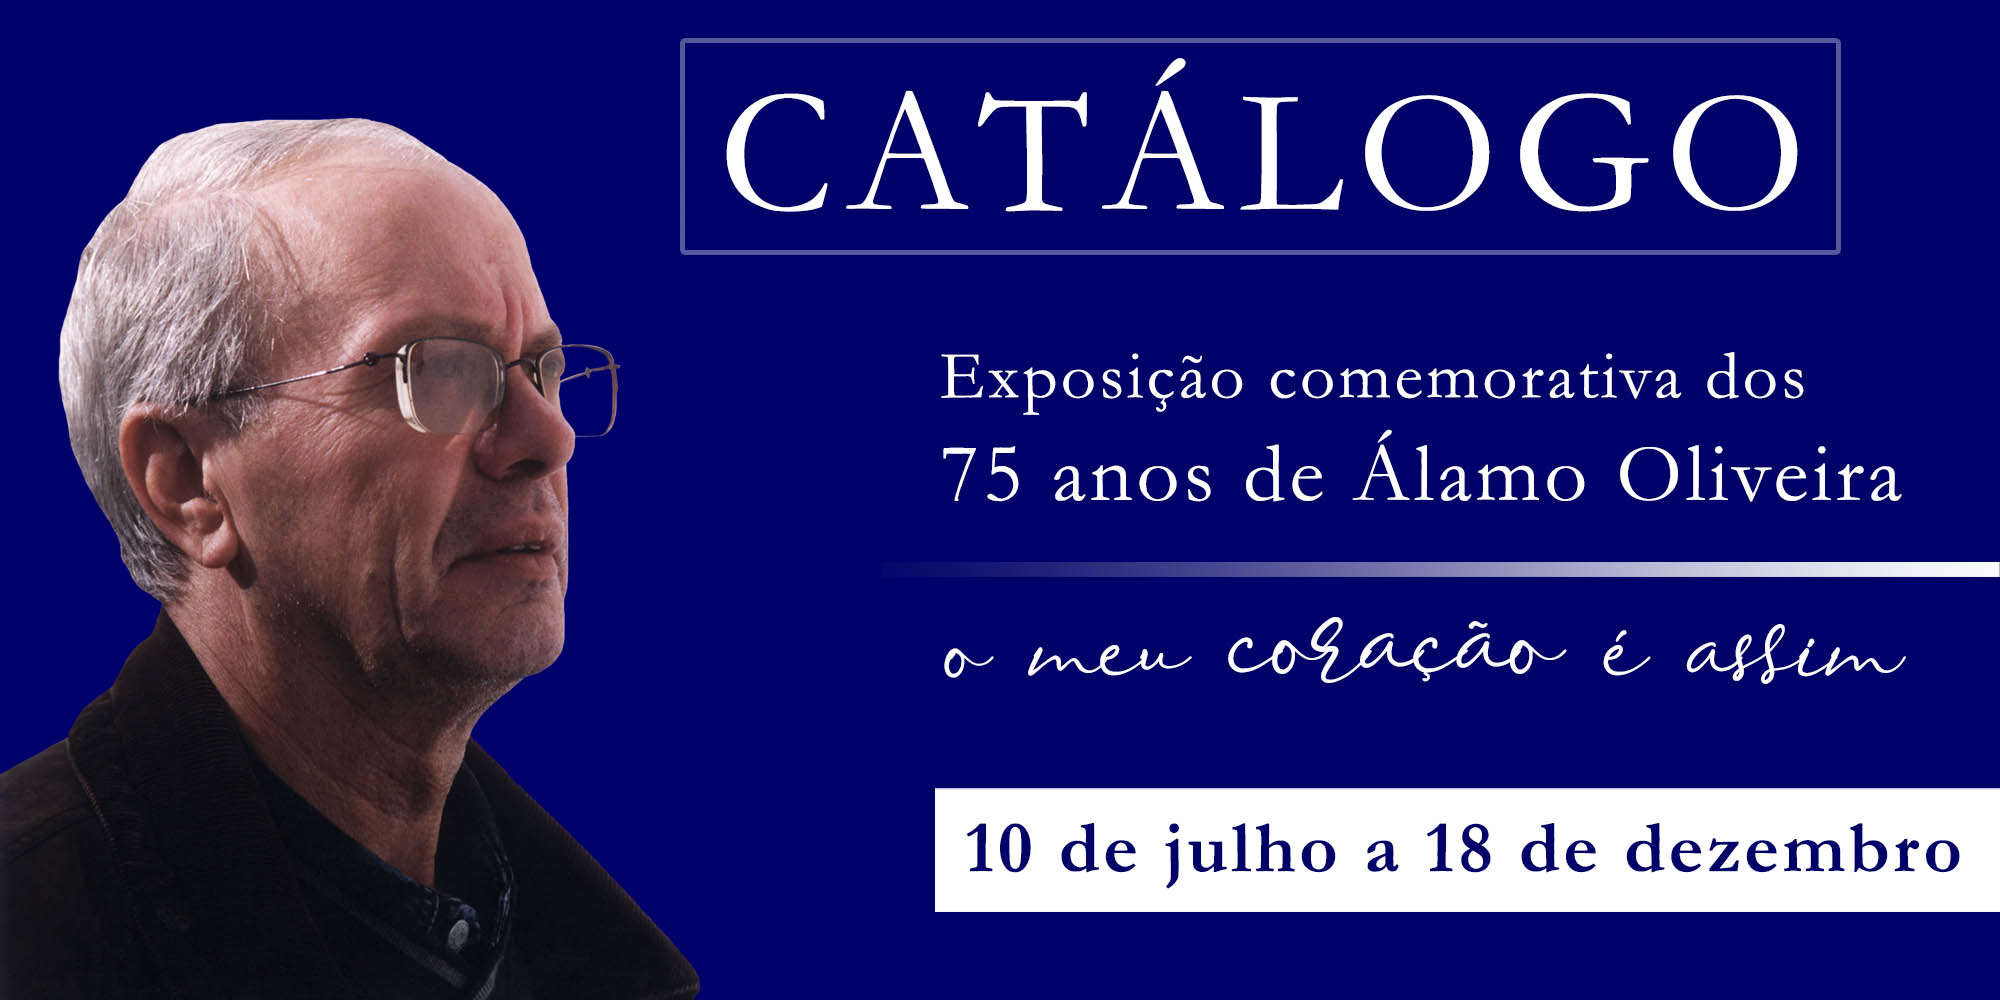 O Meu Coração é Assim – Catálogo da Exposição comemorativa dos 75 anos de Álamo Oliveira